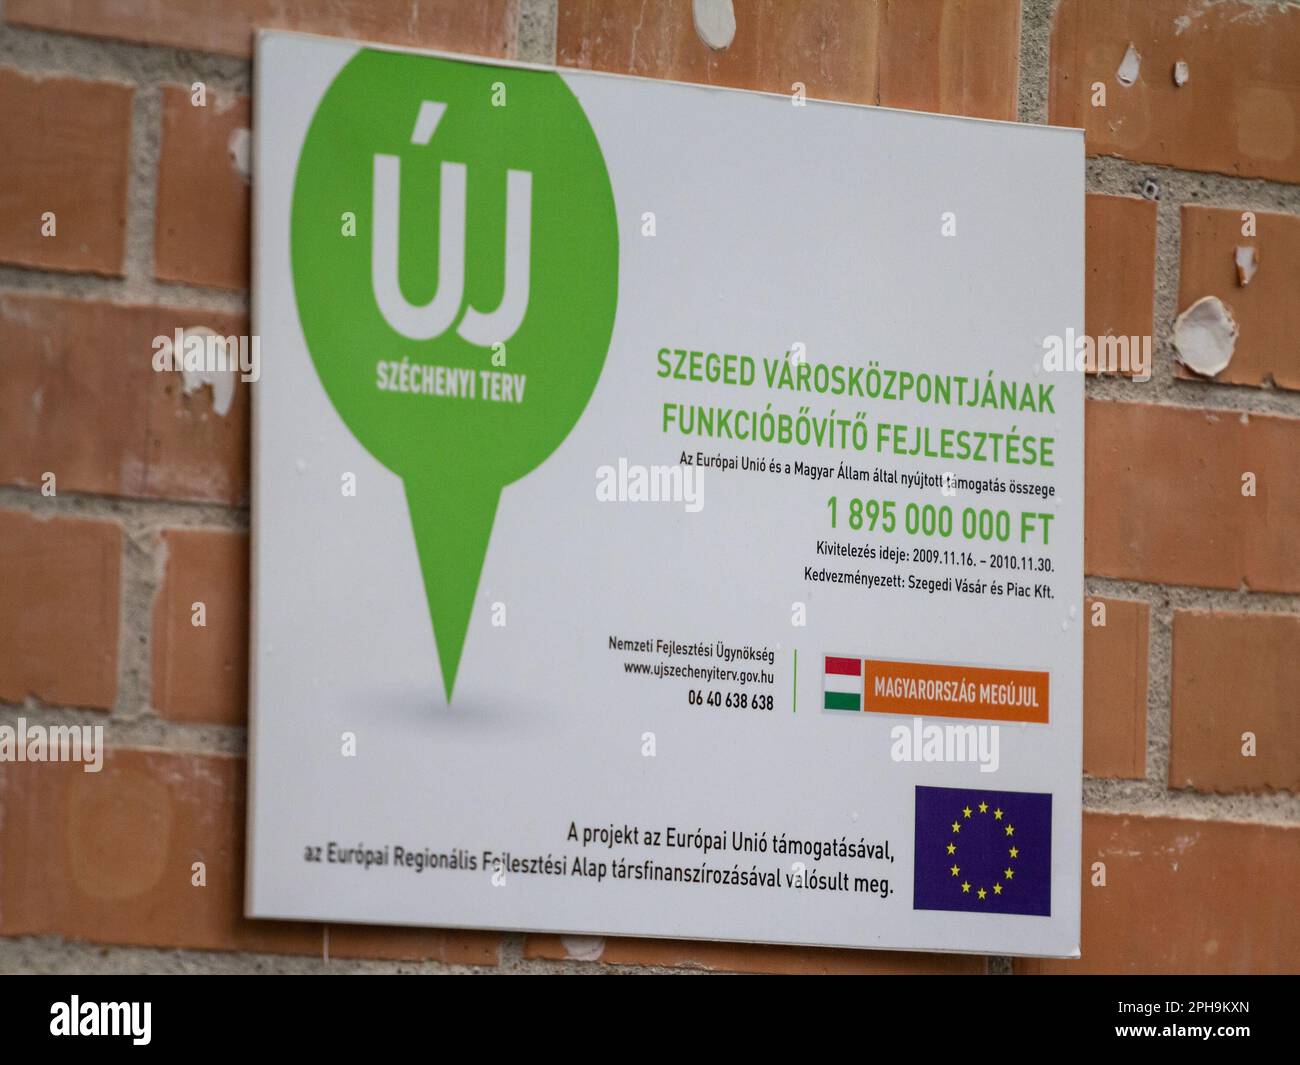 Bild eines Logos von Uj Szechenyi auf dem Schild, das ein Entwicklungsprojekt in Szeged, Ungarn, kennzeichnet. Stockfoto